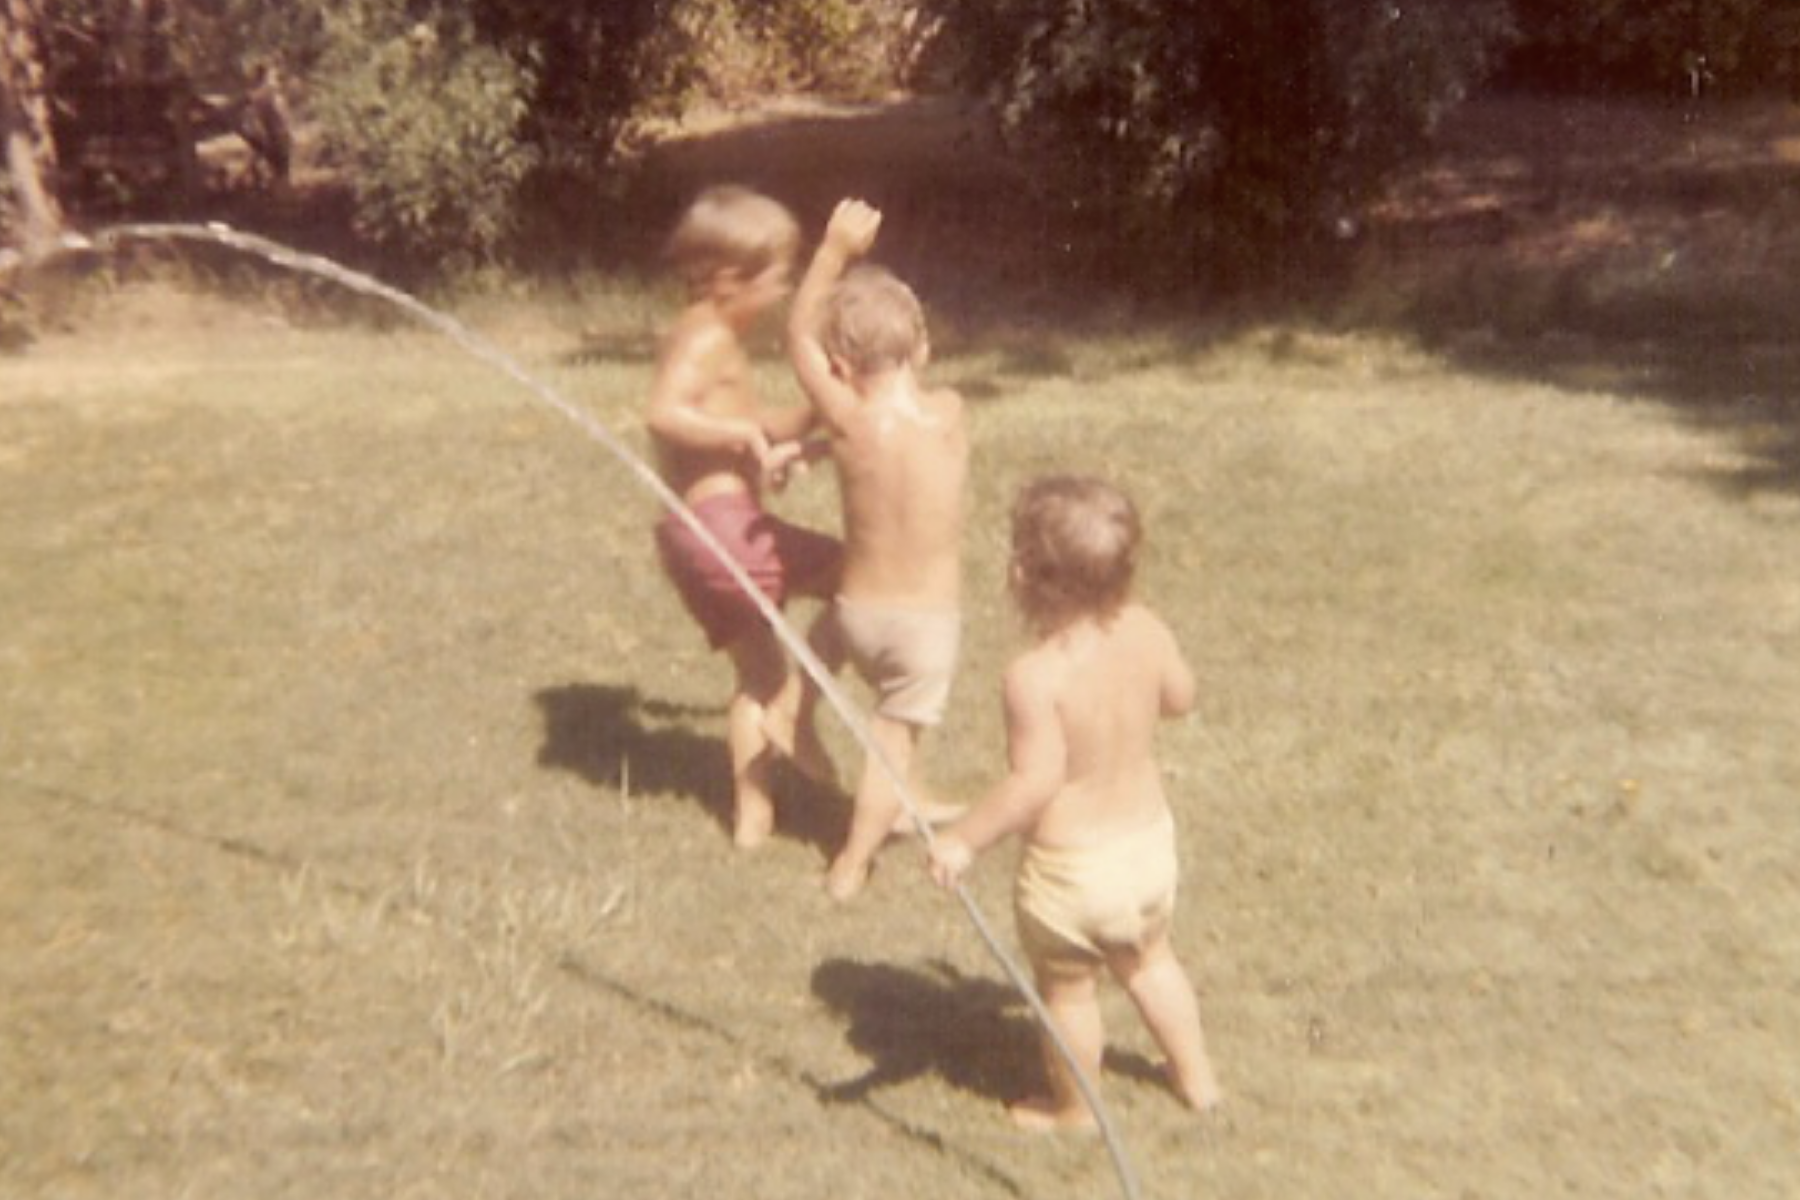  kids sprinkler 70's style